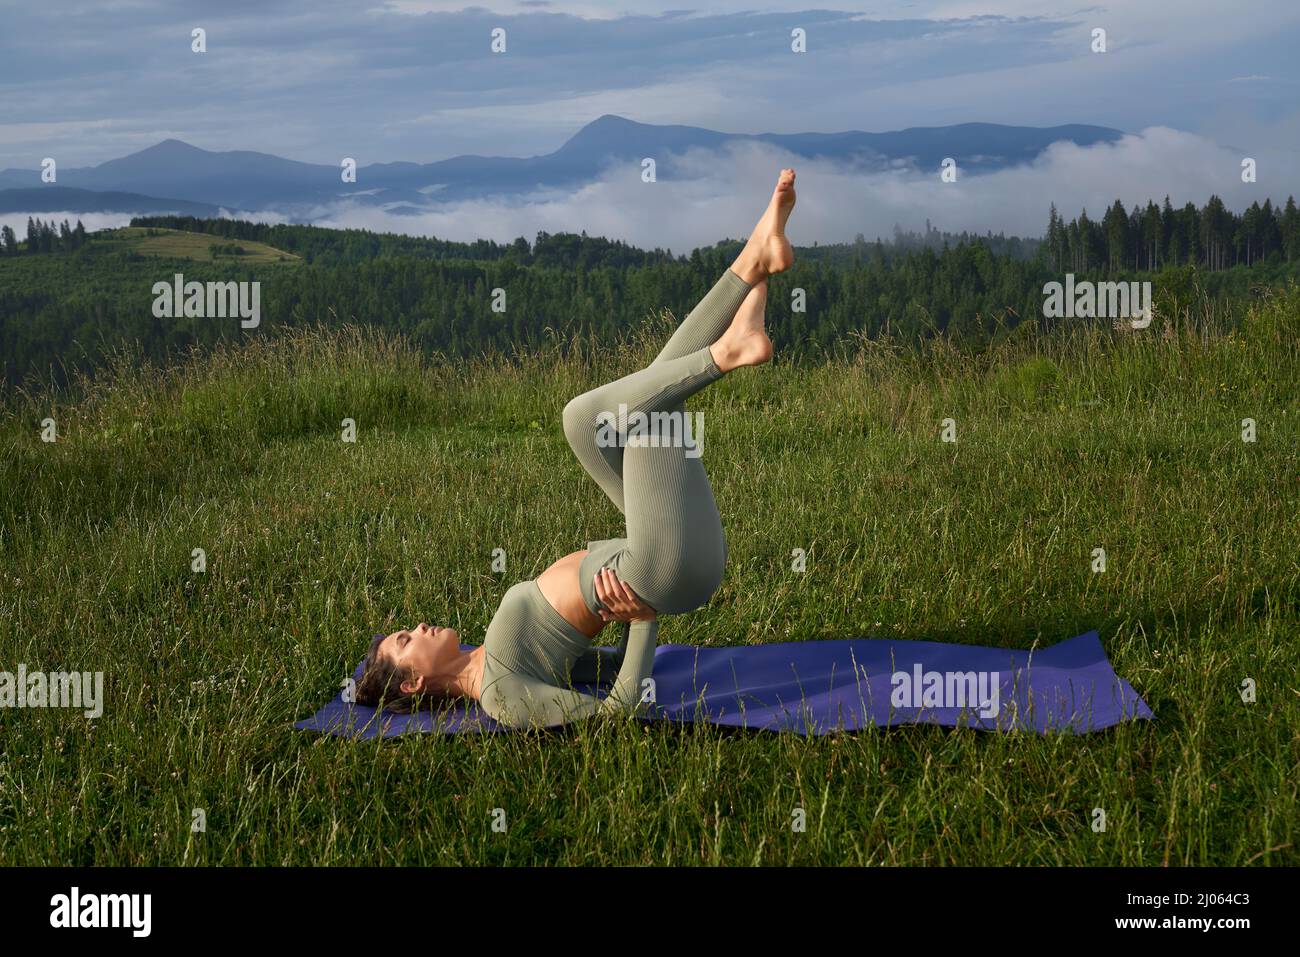 Junge aktive Frau in Sportkleidung, die Fitnessübungen in einer Yogamatte mit herrlichem Blick auf die Berge macht. Konzept der Menschen und gesunde Lebensstile. Stockfoto